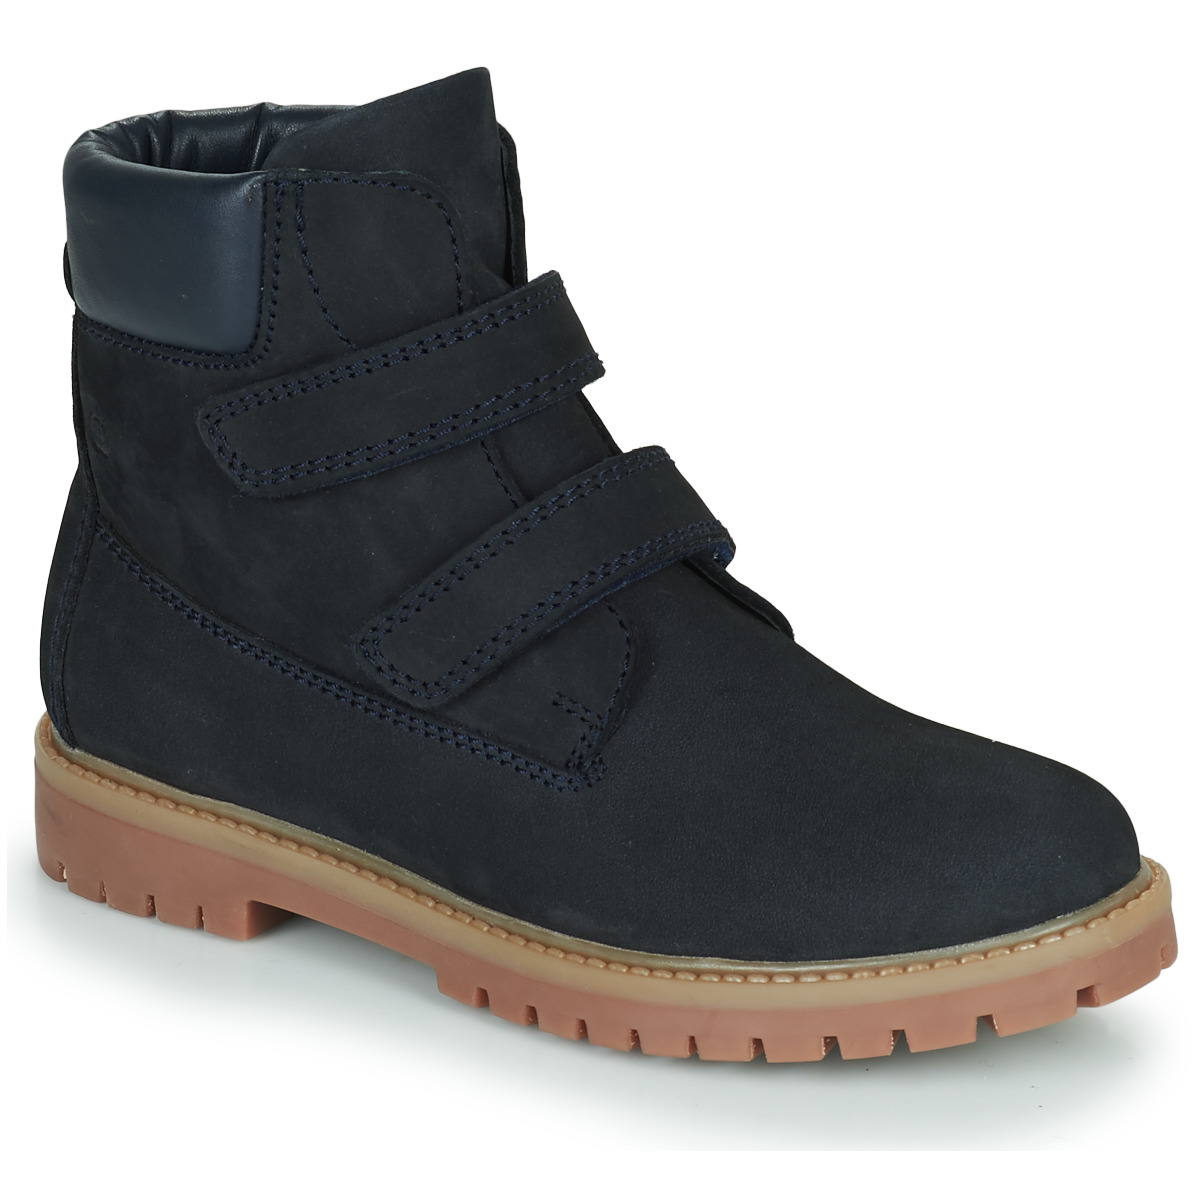 Shoes Boy Mid boots Citrouille et Compagnie PAXA Blue